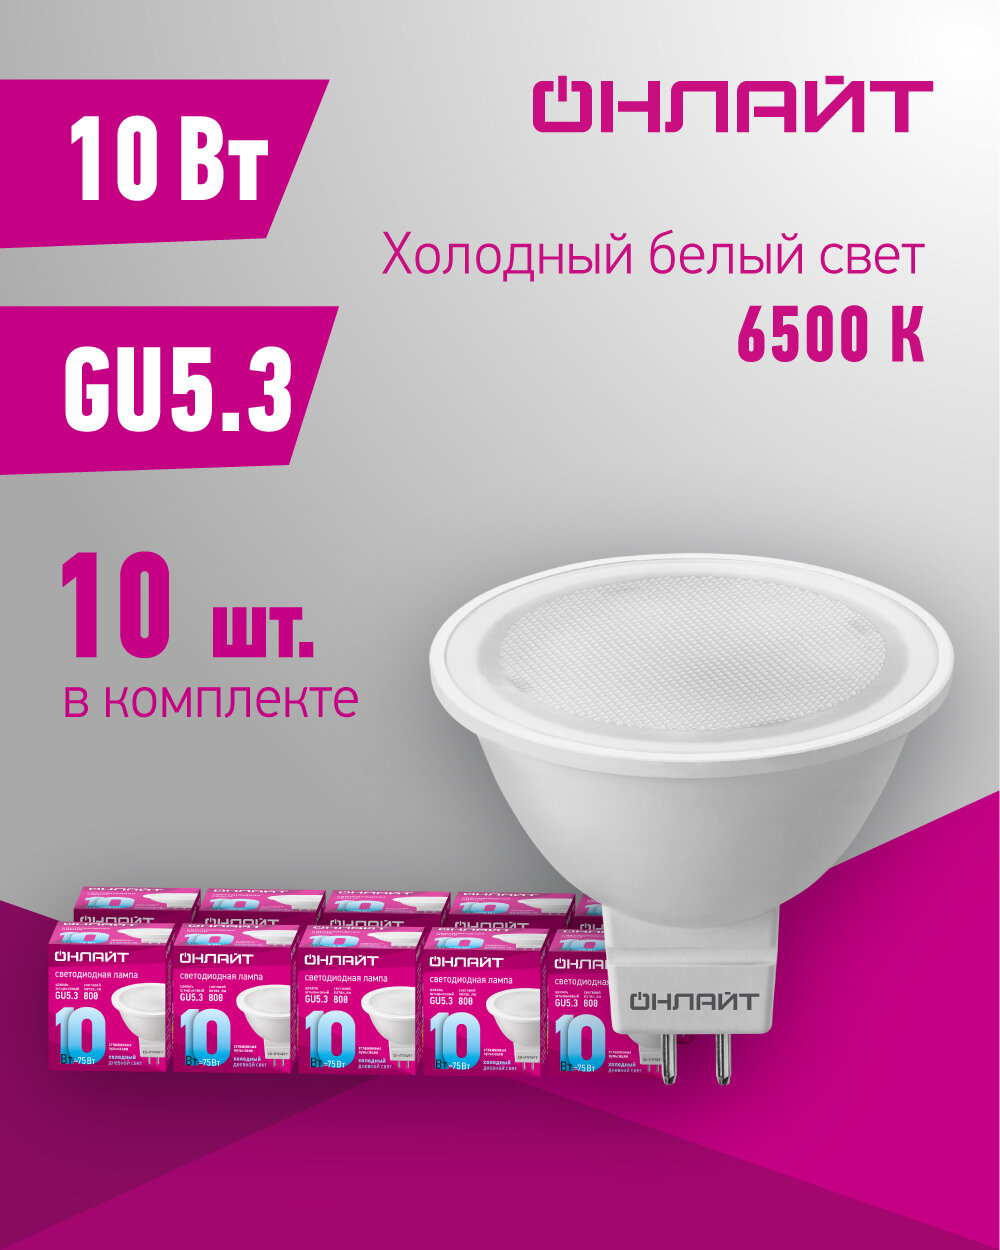 Лампа светодиодная онлайт 61 891, 10 Вт, цоколь GU5.3, холодный свет 6500К, упаковка 10 шт.